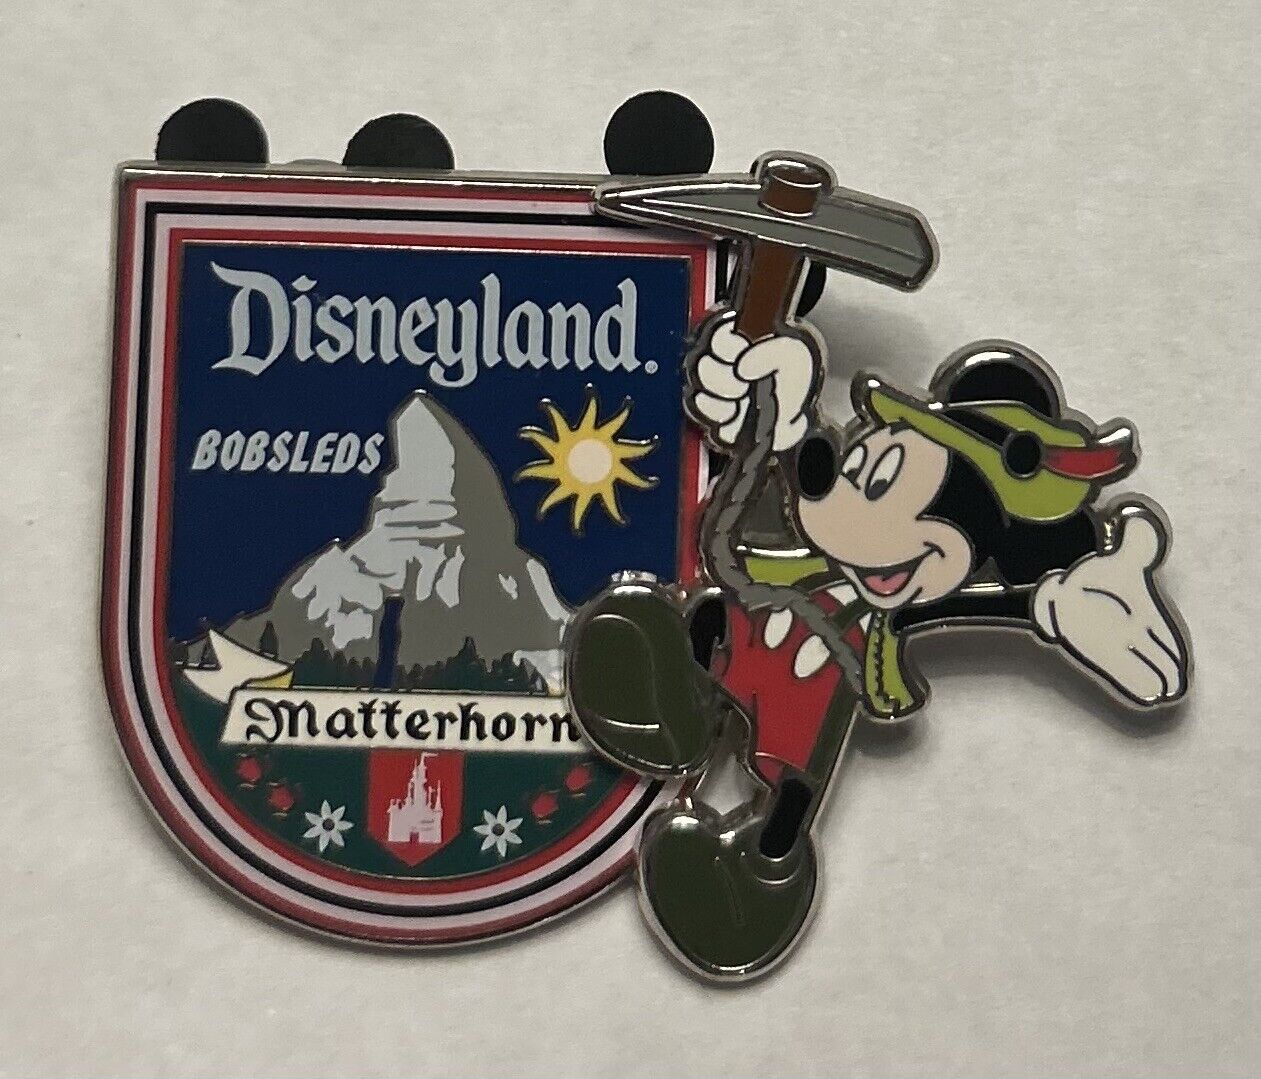 Disneyland - Matterhorn Bobsleds - Mickey Mouse 3D Pin